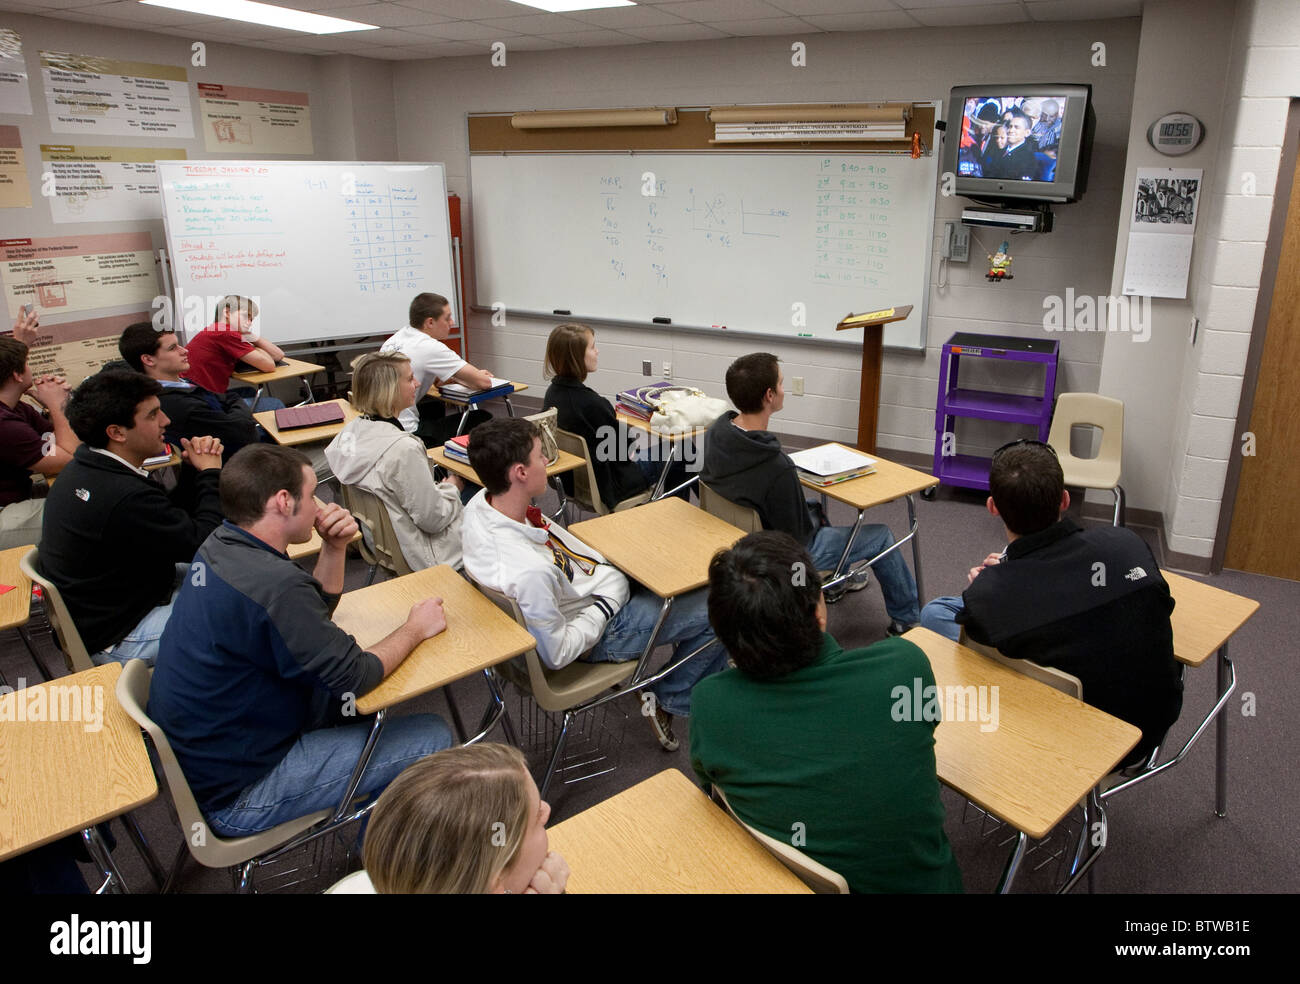 Les garçons et les filles regarder l'inauguration de Barack Obama à la télévision pendant la classe à une Midland, Texas, high school le 20 janvier 2009. Banque D'Images